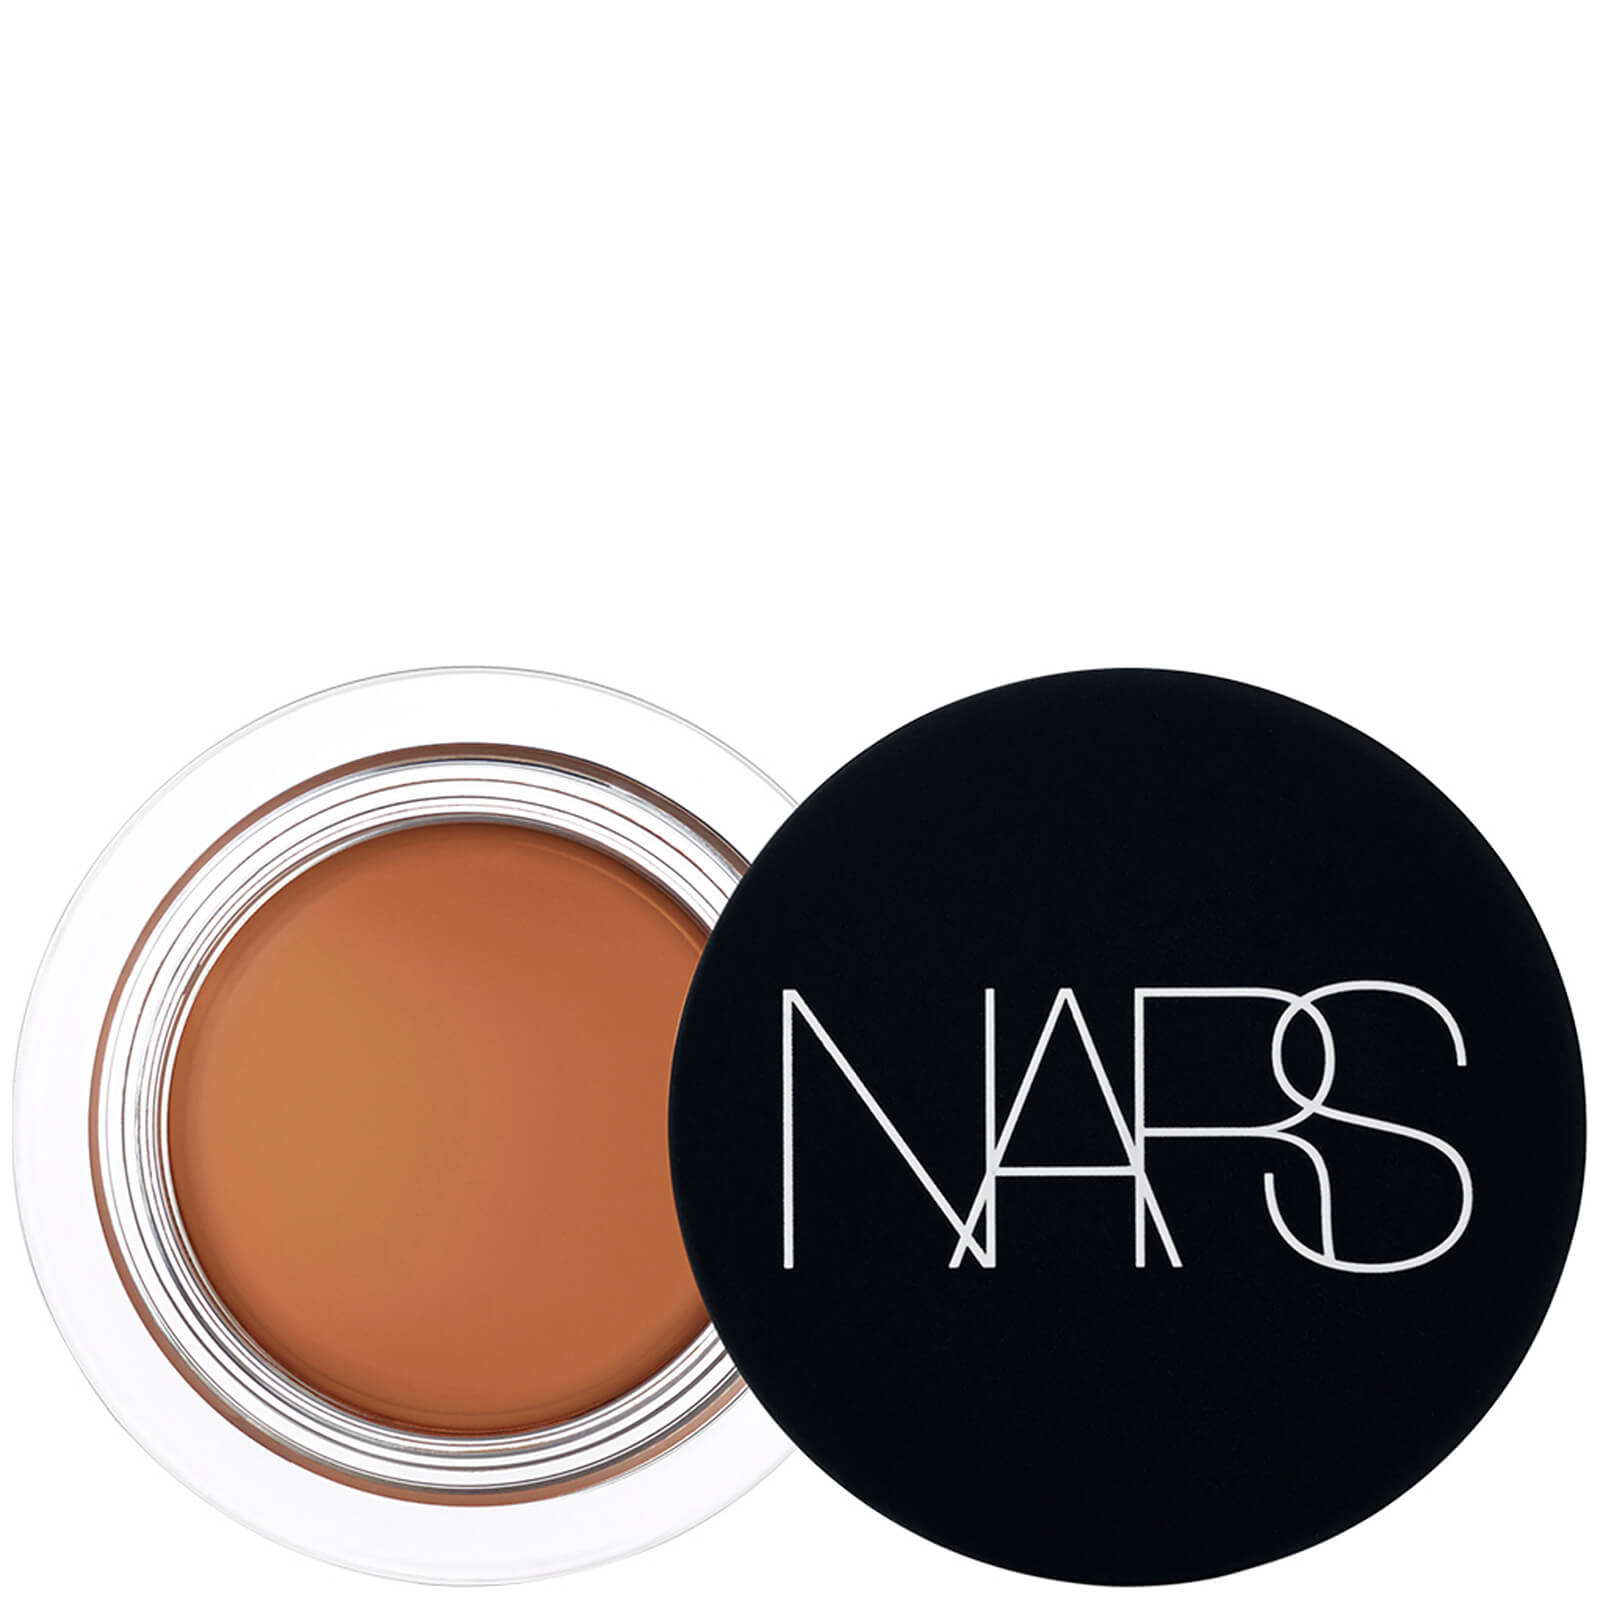 NARS Soft Matte Complete Concealer 6.2g (Various Shades) - Hazelnut